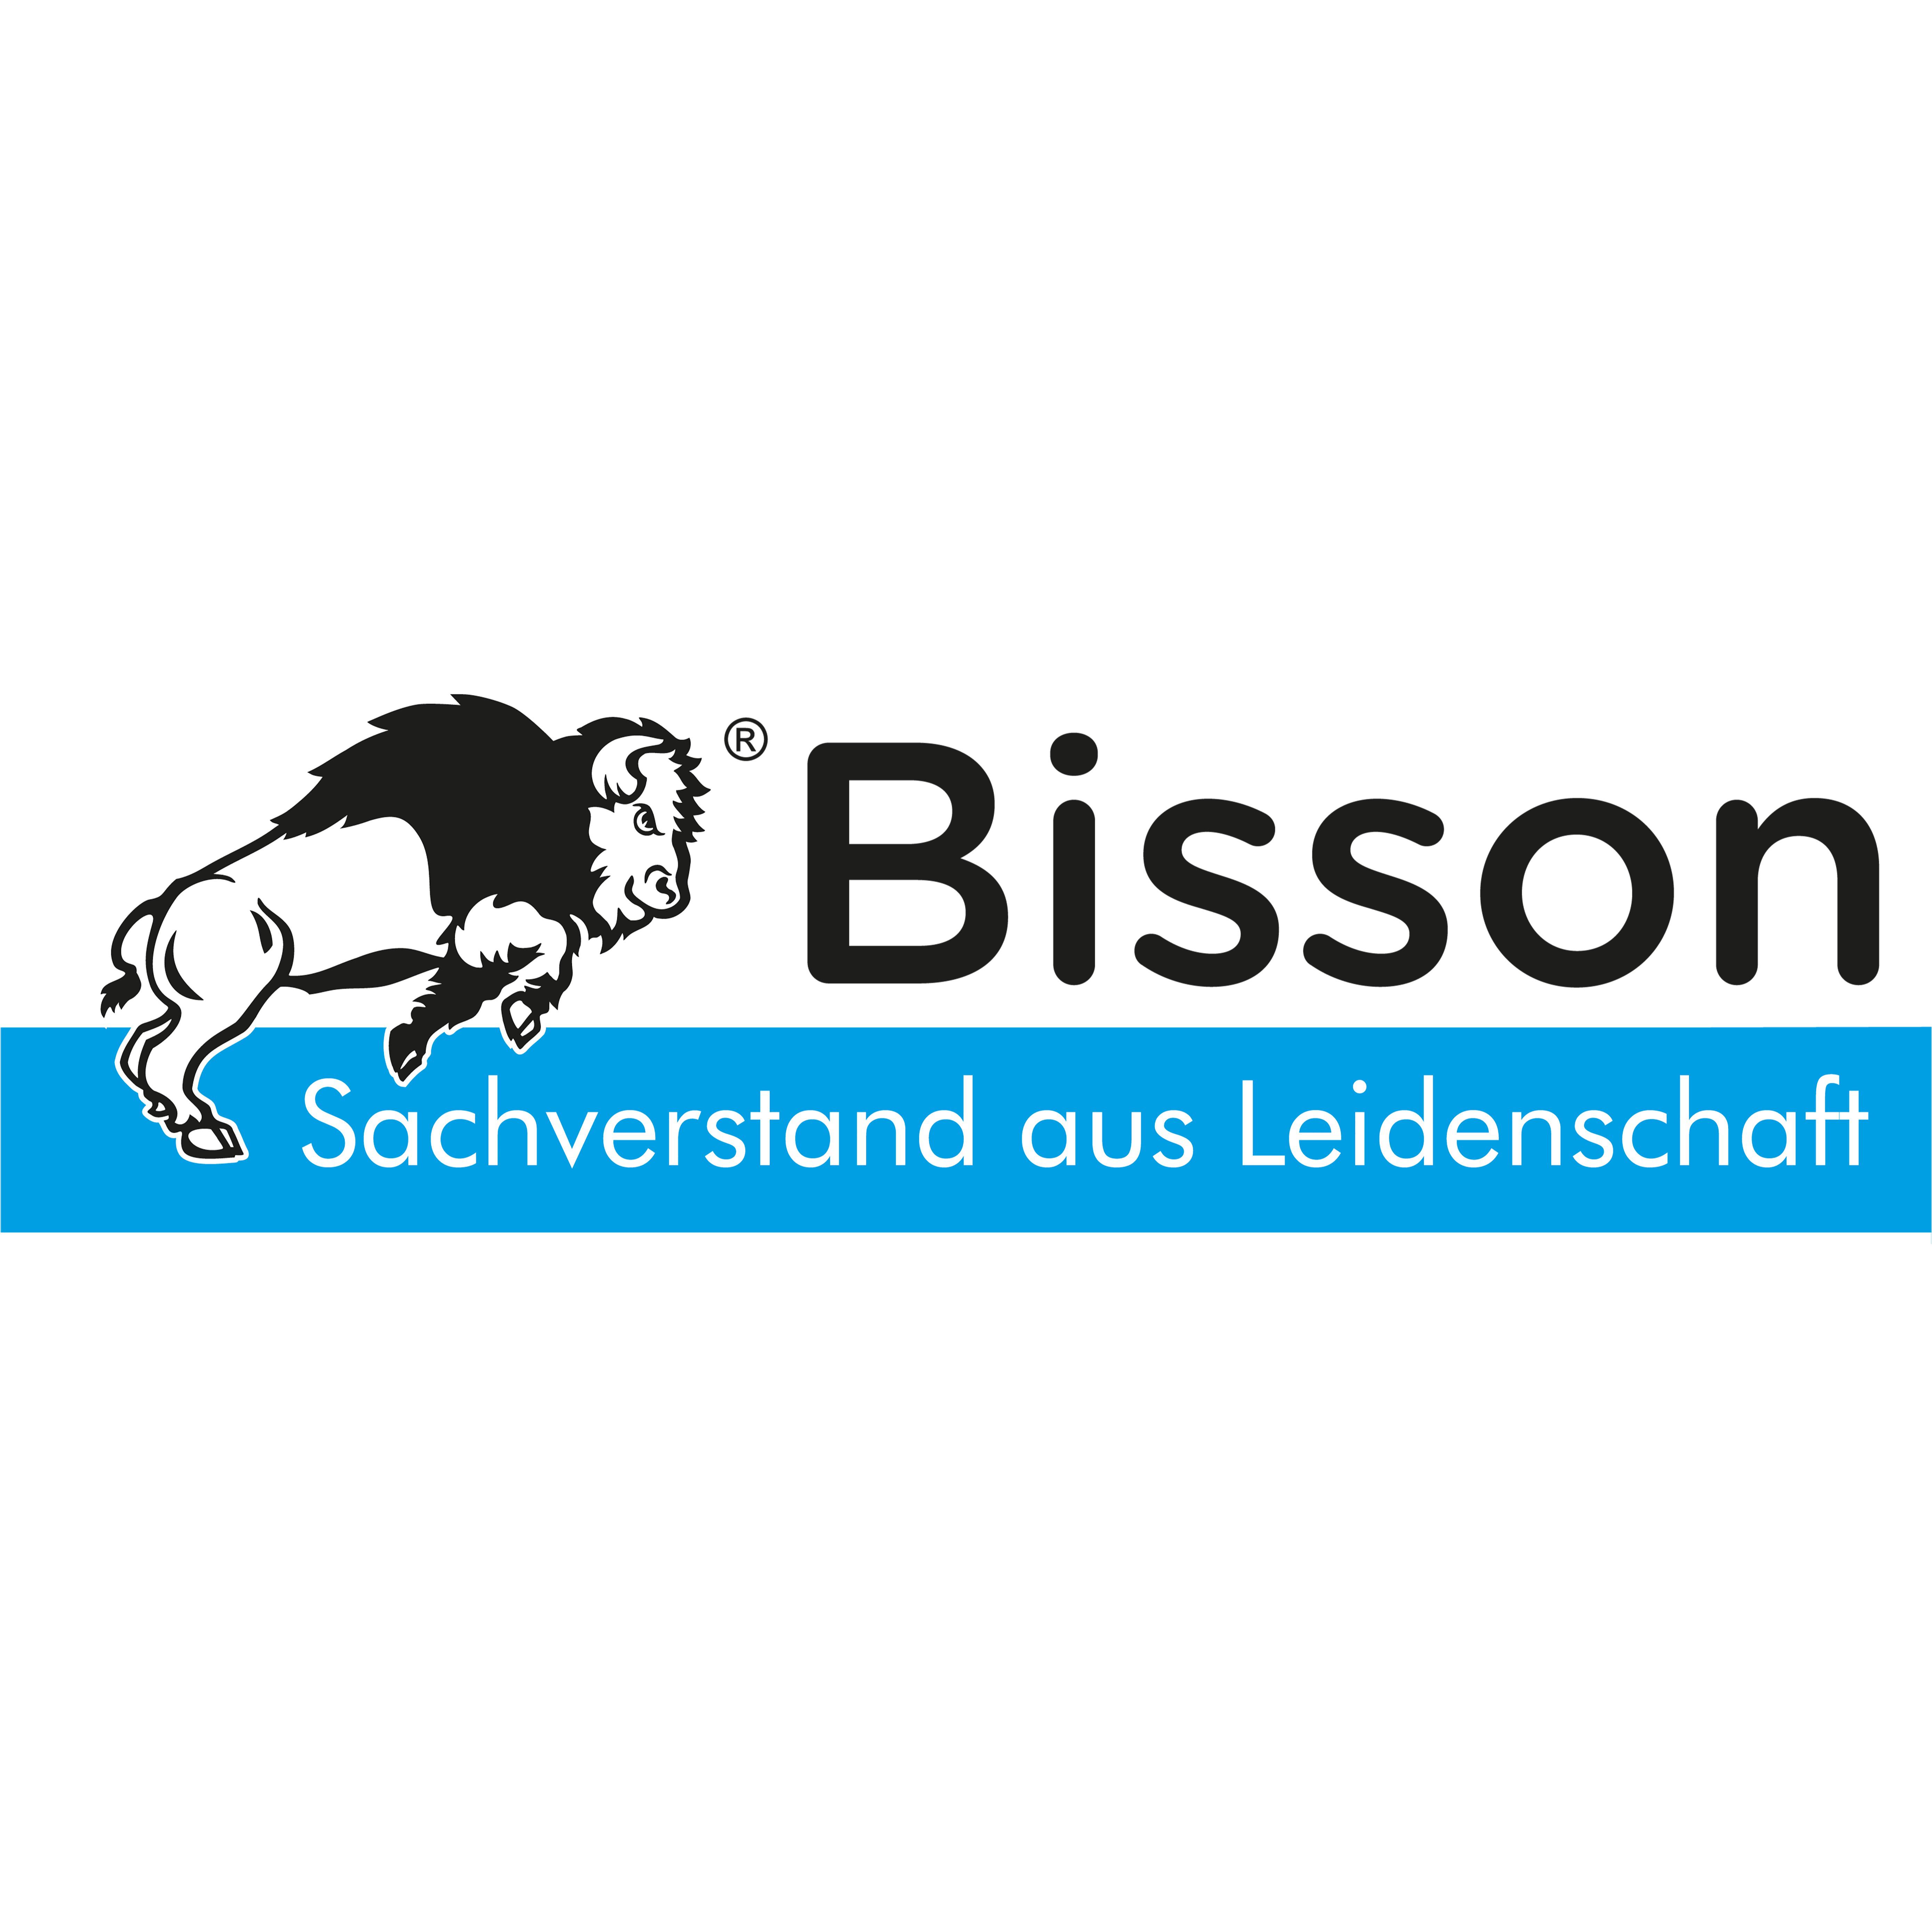 Kfz-Sachverständigenbüro Michael Bisson e.K. in Ketsch am Rhein - Logo